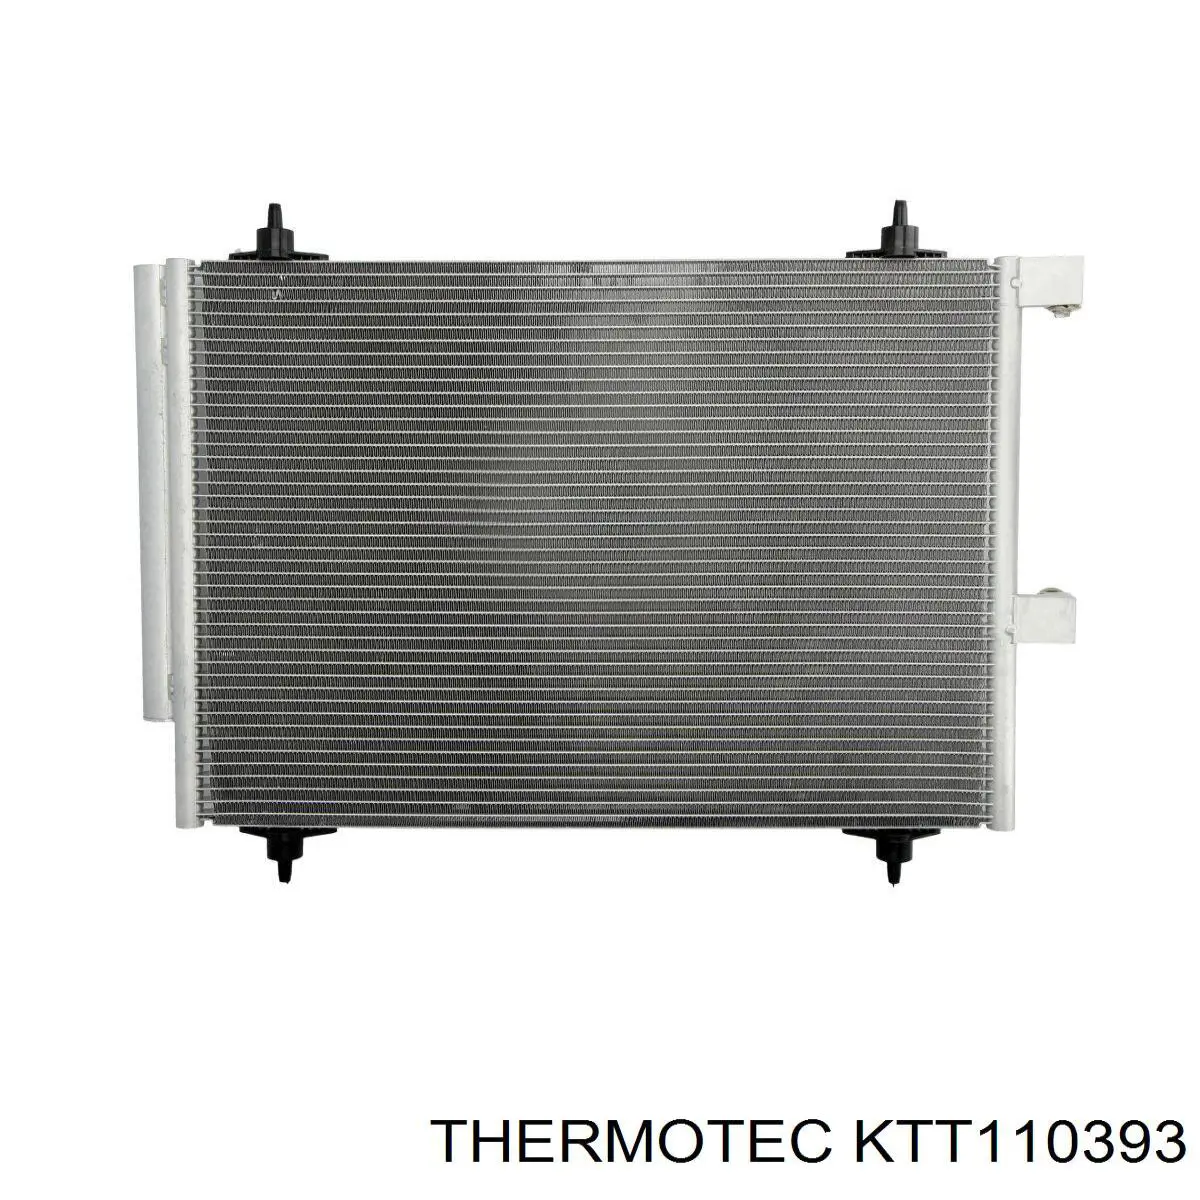 KTT110393 Thermotec condensador aire acondicionado